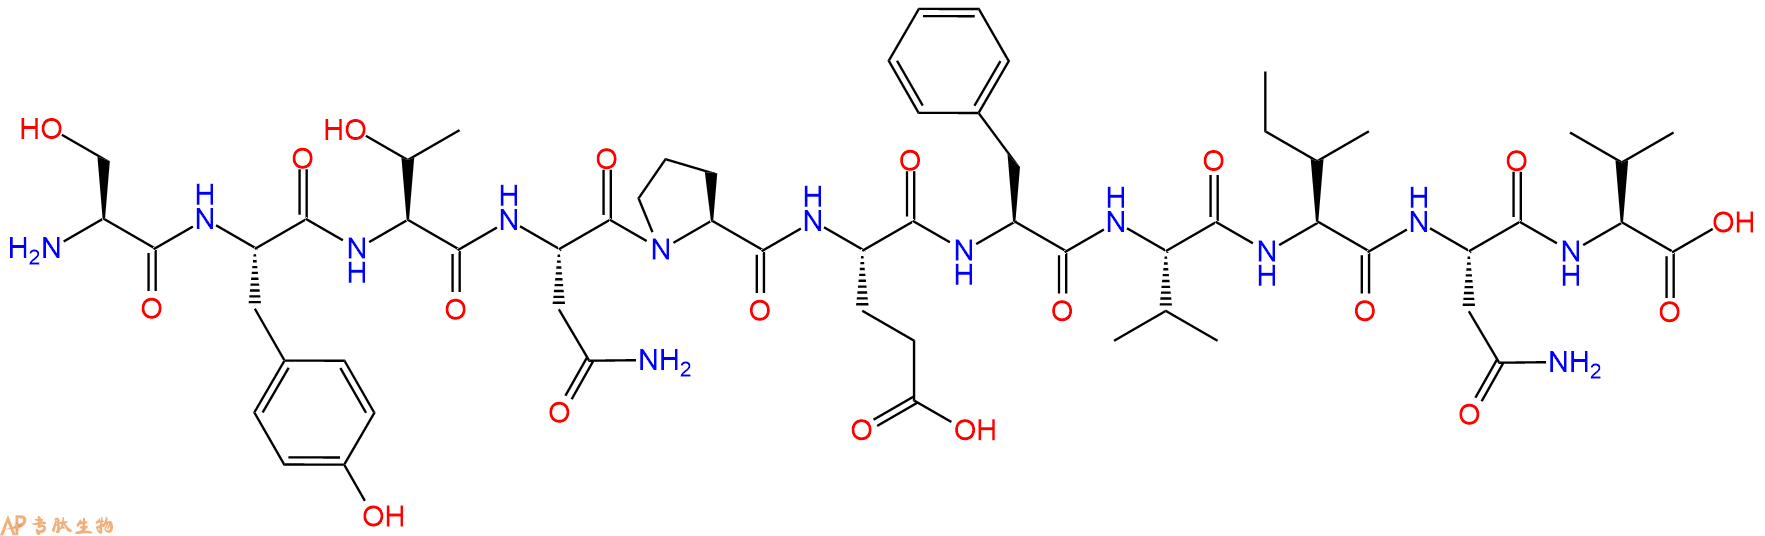 专肽生物产品蛋白激酶C片段 Protein Kinase C (661-671)